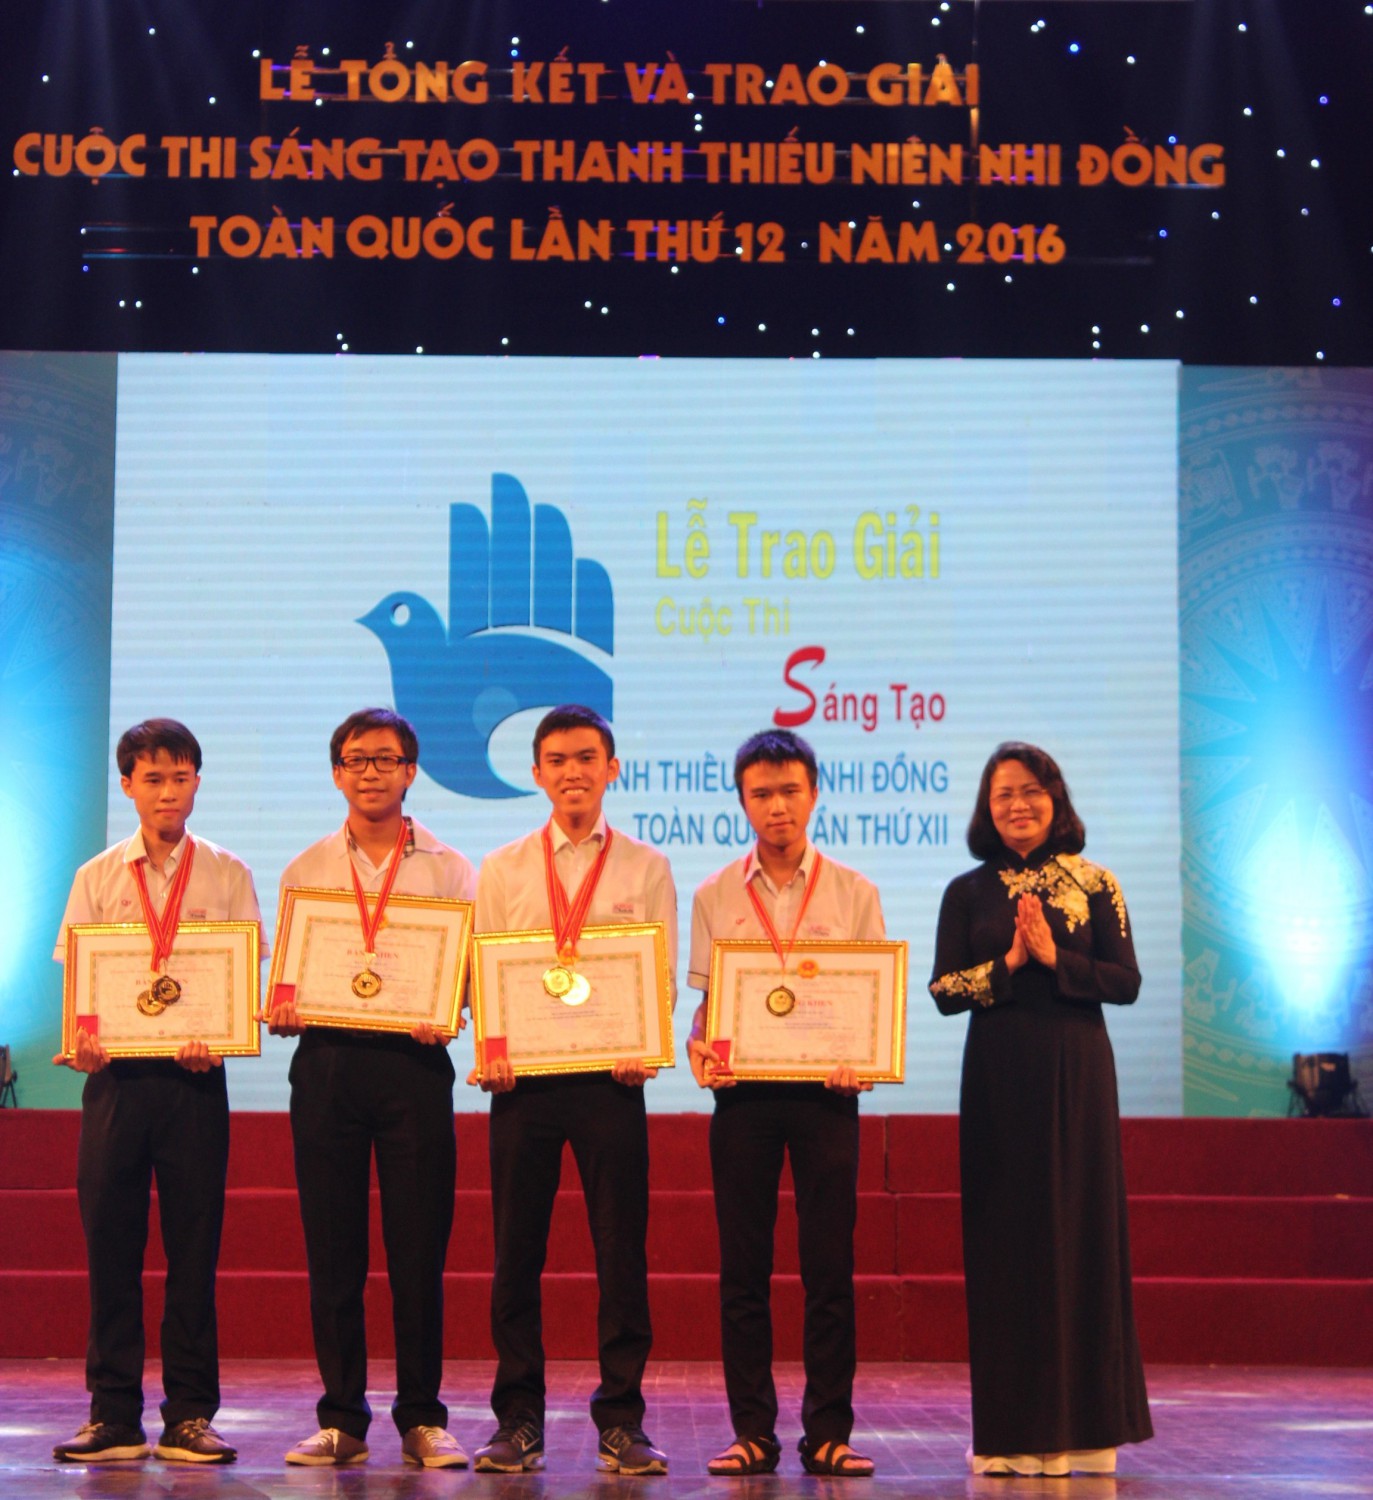 Phó chủ tịch nước Đặng Thị Ngọc Thịnh trao giải Đặc biệt Cuộc thi toàn quốc năm 2016 cho Đăng Hoàng San và cộng sự (Đặng Hoàng San đứng bìa trái)